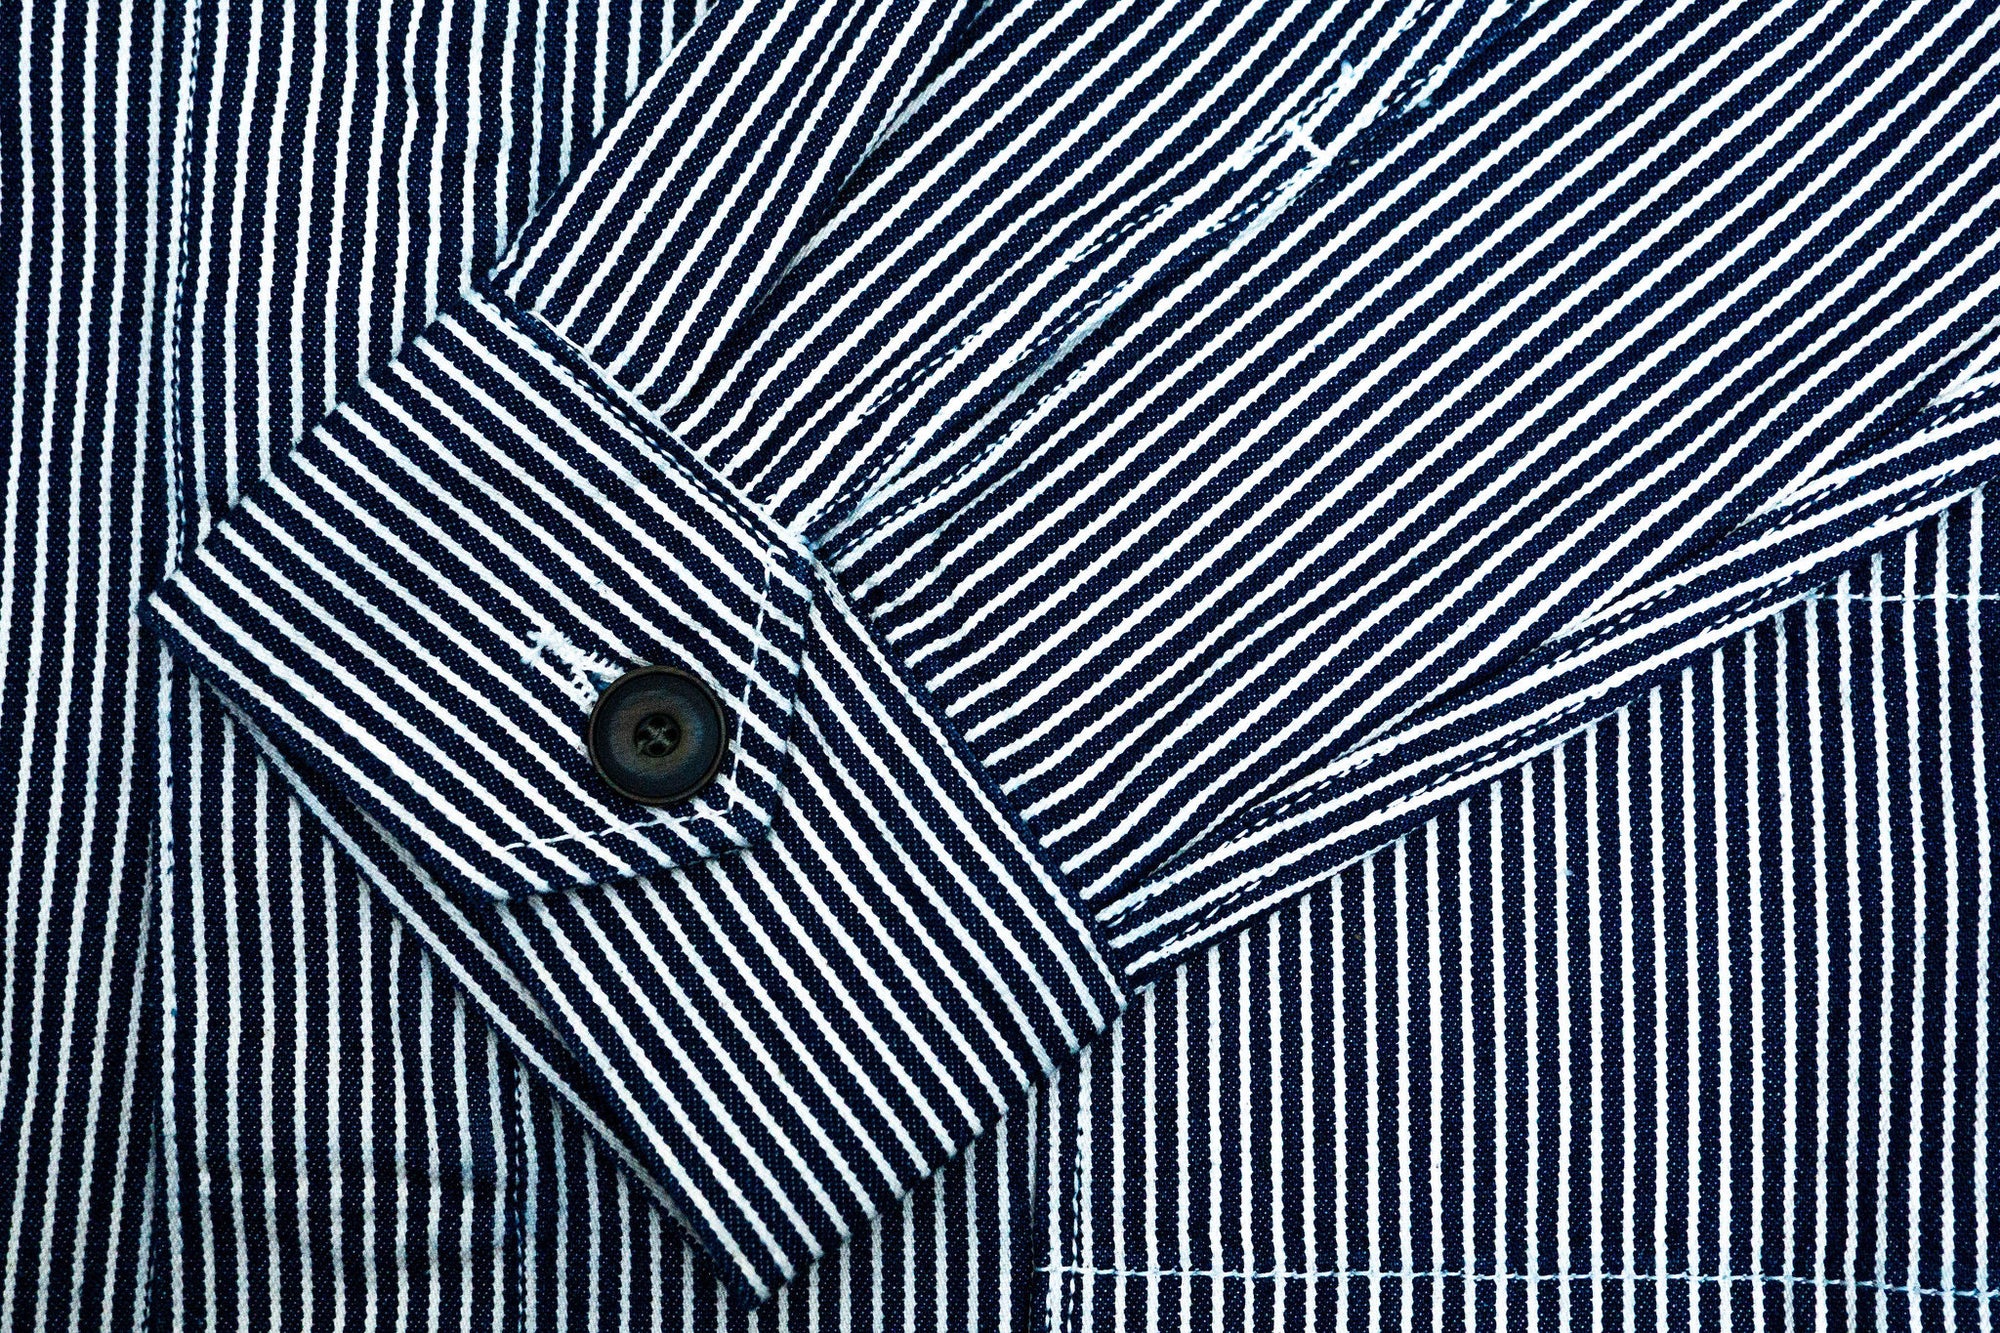 Freenote Cloth CC-1 Chore Coat - Stripe